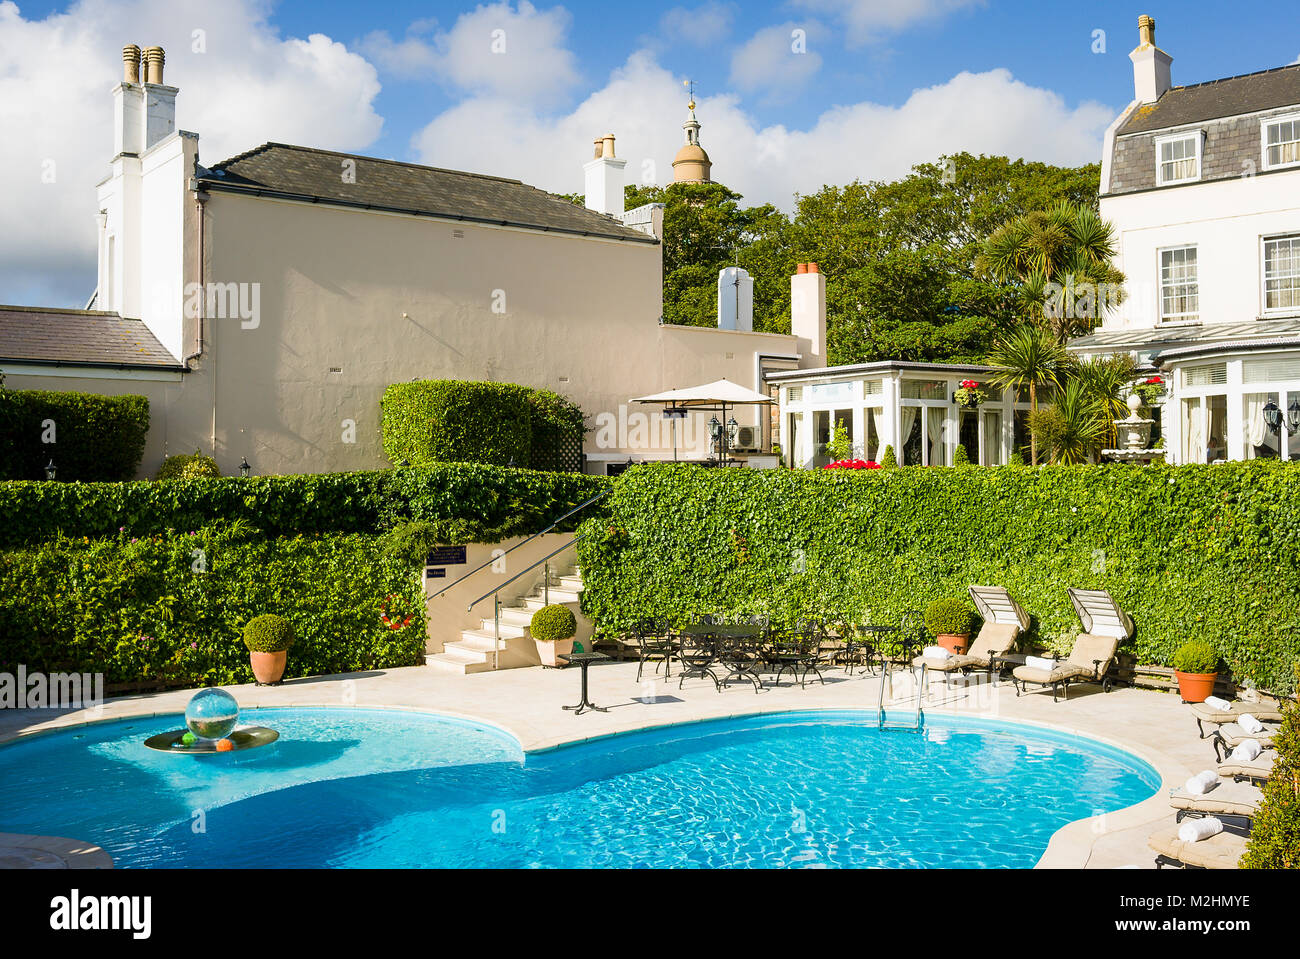 Un invitante piscina nel giardino del vecchio regolatore's Hotel a St Peter Port Guernsey Isole del Canale della Manica UK Foto Stock